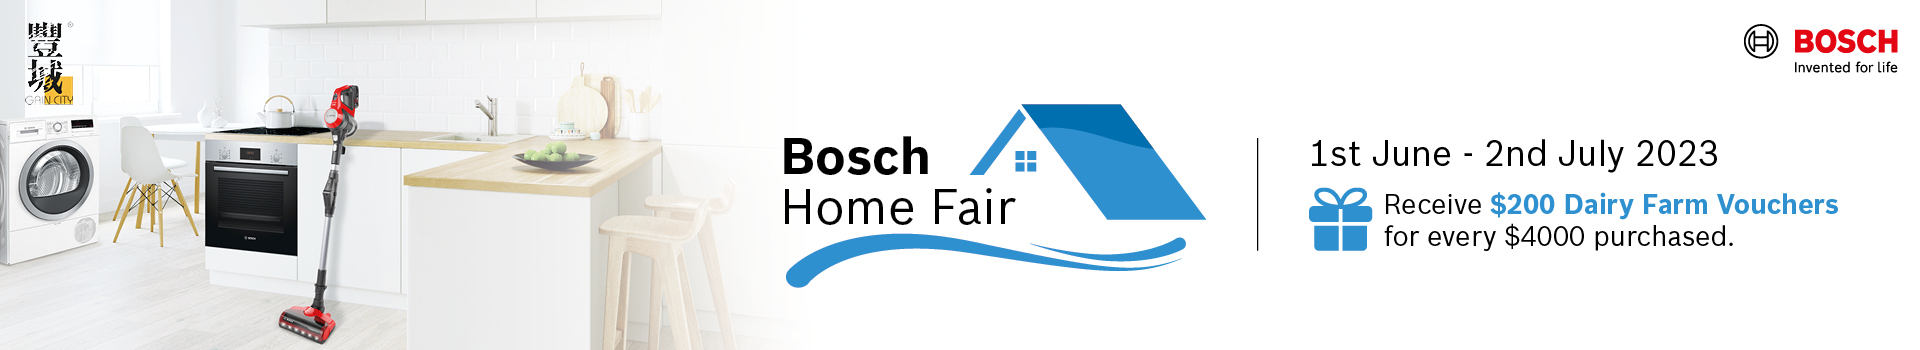 Bosch Home Fair 